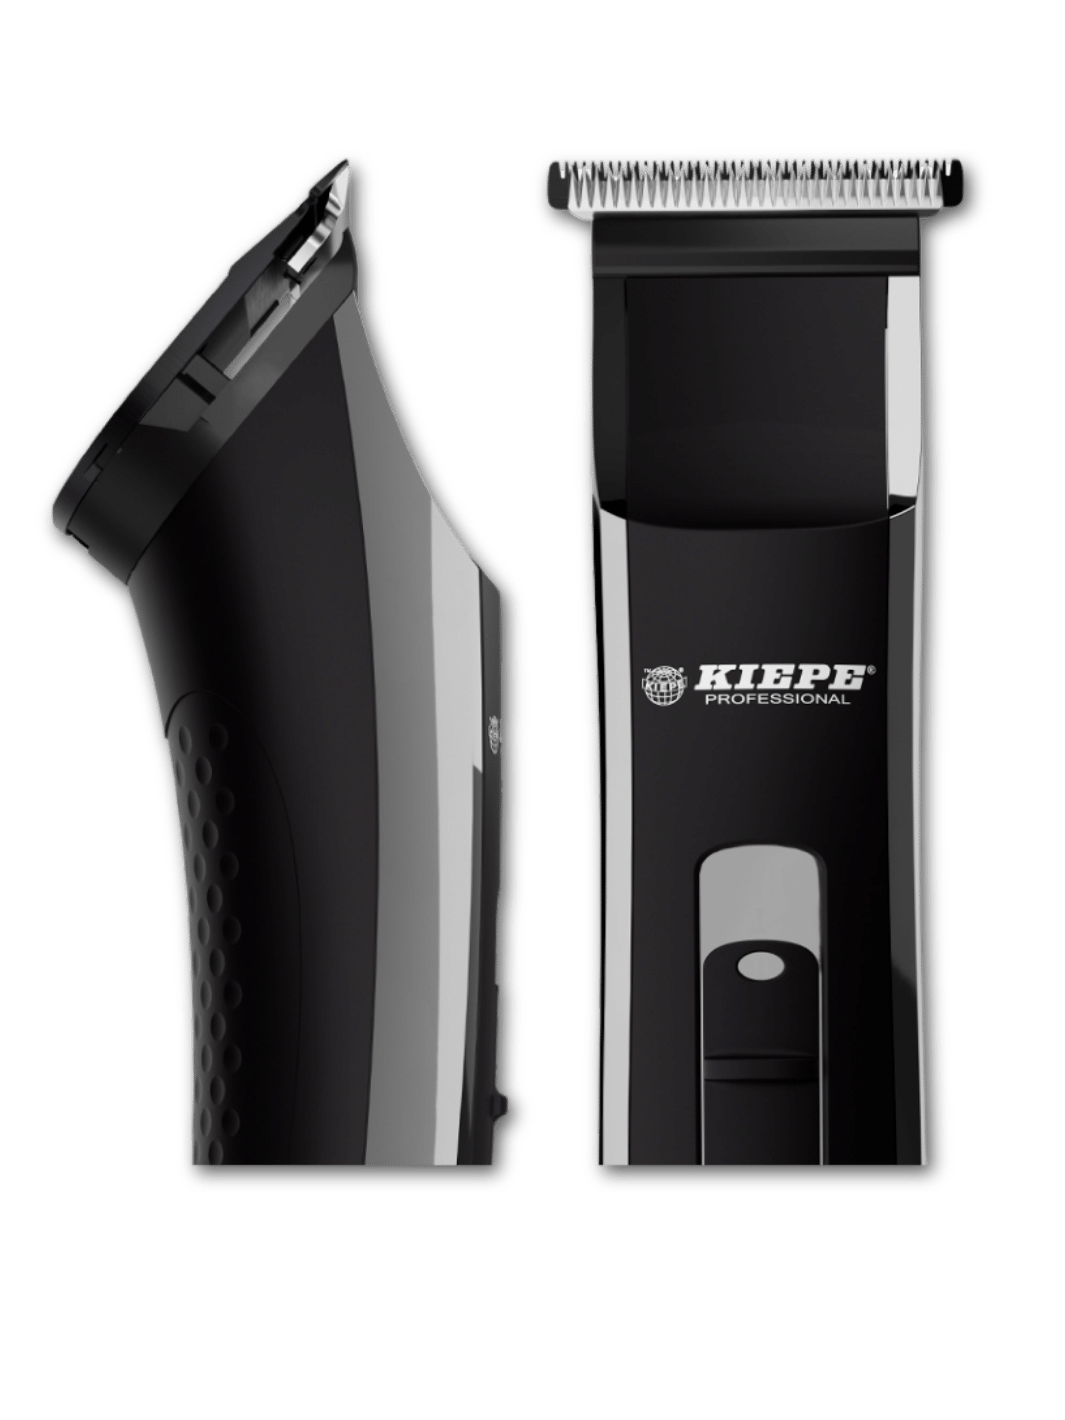 Der Kiepe Trimmer mini Groove Pro schnurlos, erhältlich bei Phullcutz, bietet professionelle Präzision und elegantes Design für moderne Haarstyling-Anforderungen.